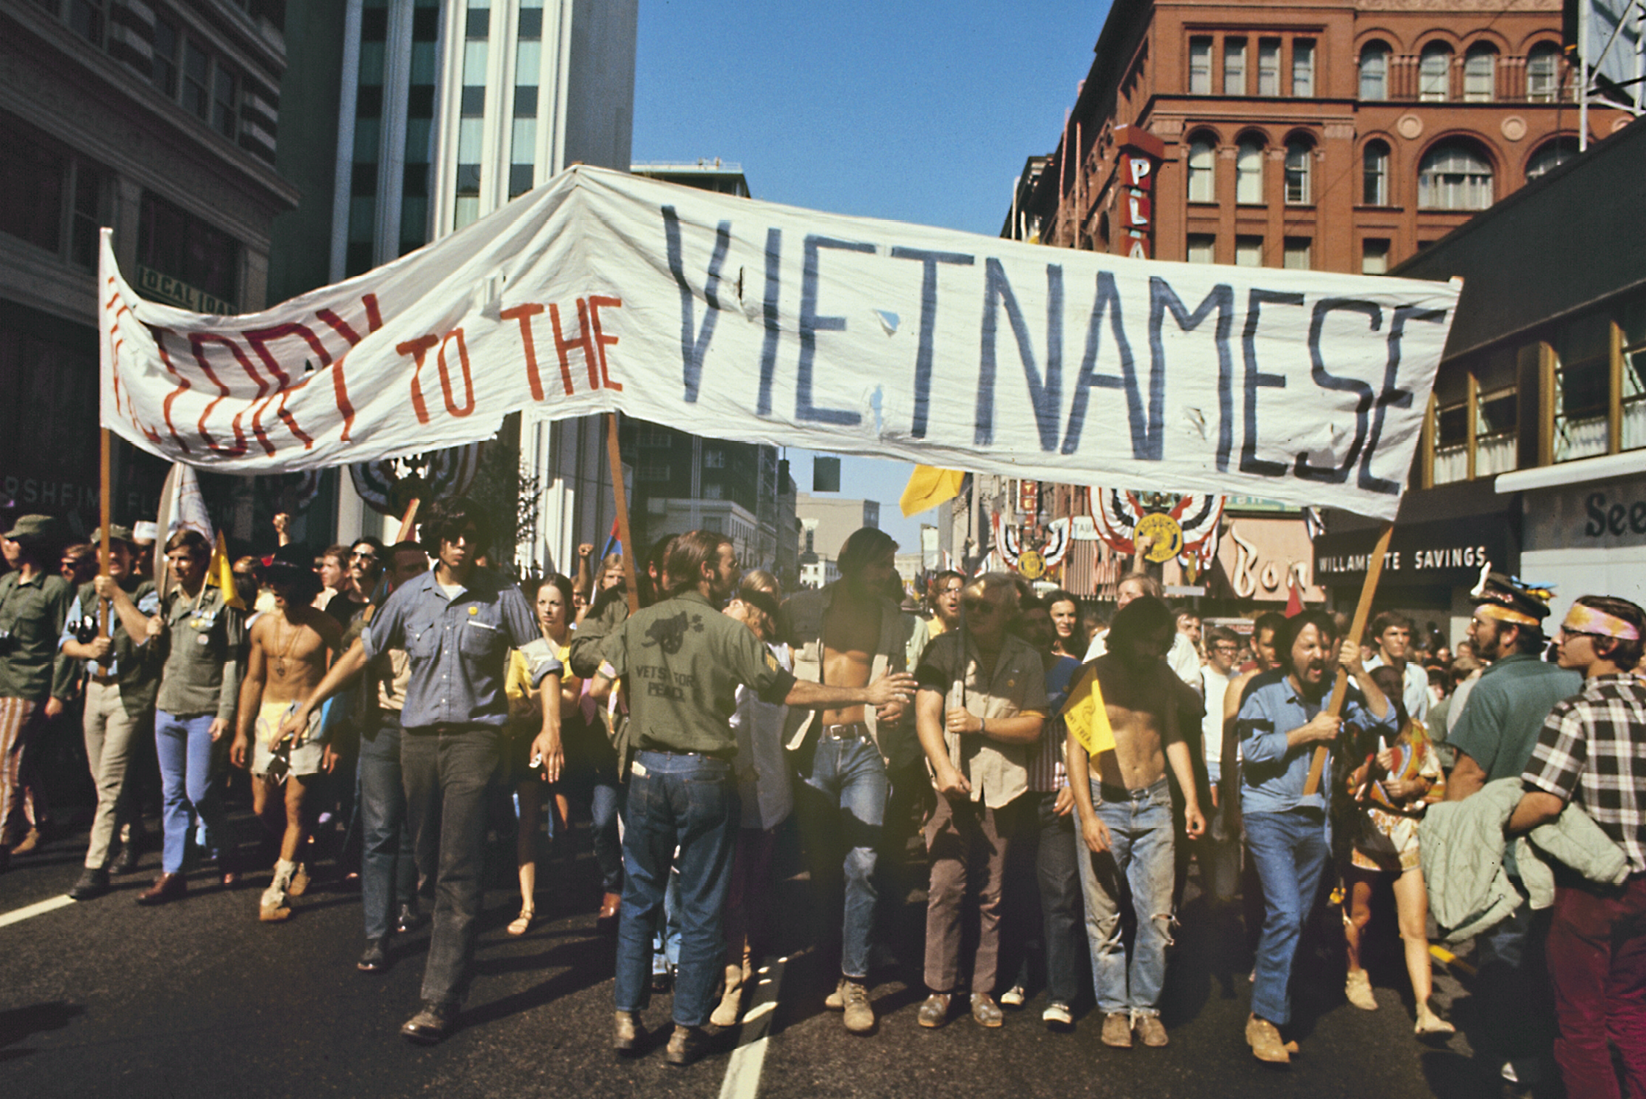 Fotografia. Pessoas na rua em um protesto. Elas carregam uma grande faixa com plavras de ordem em favor dos vietnamitas.